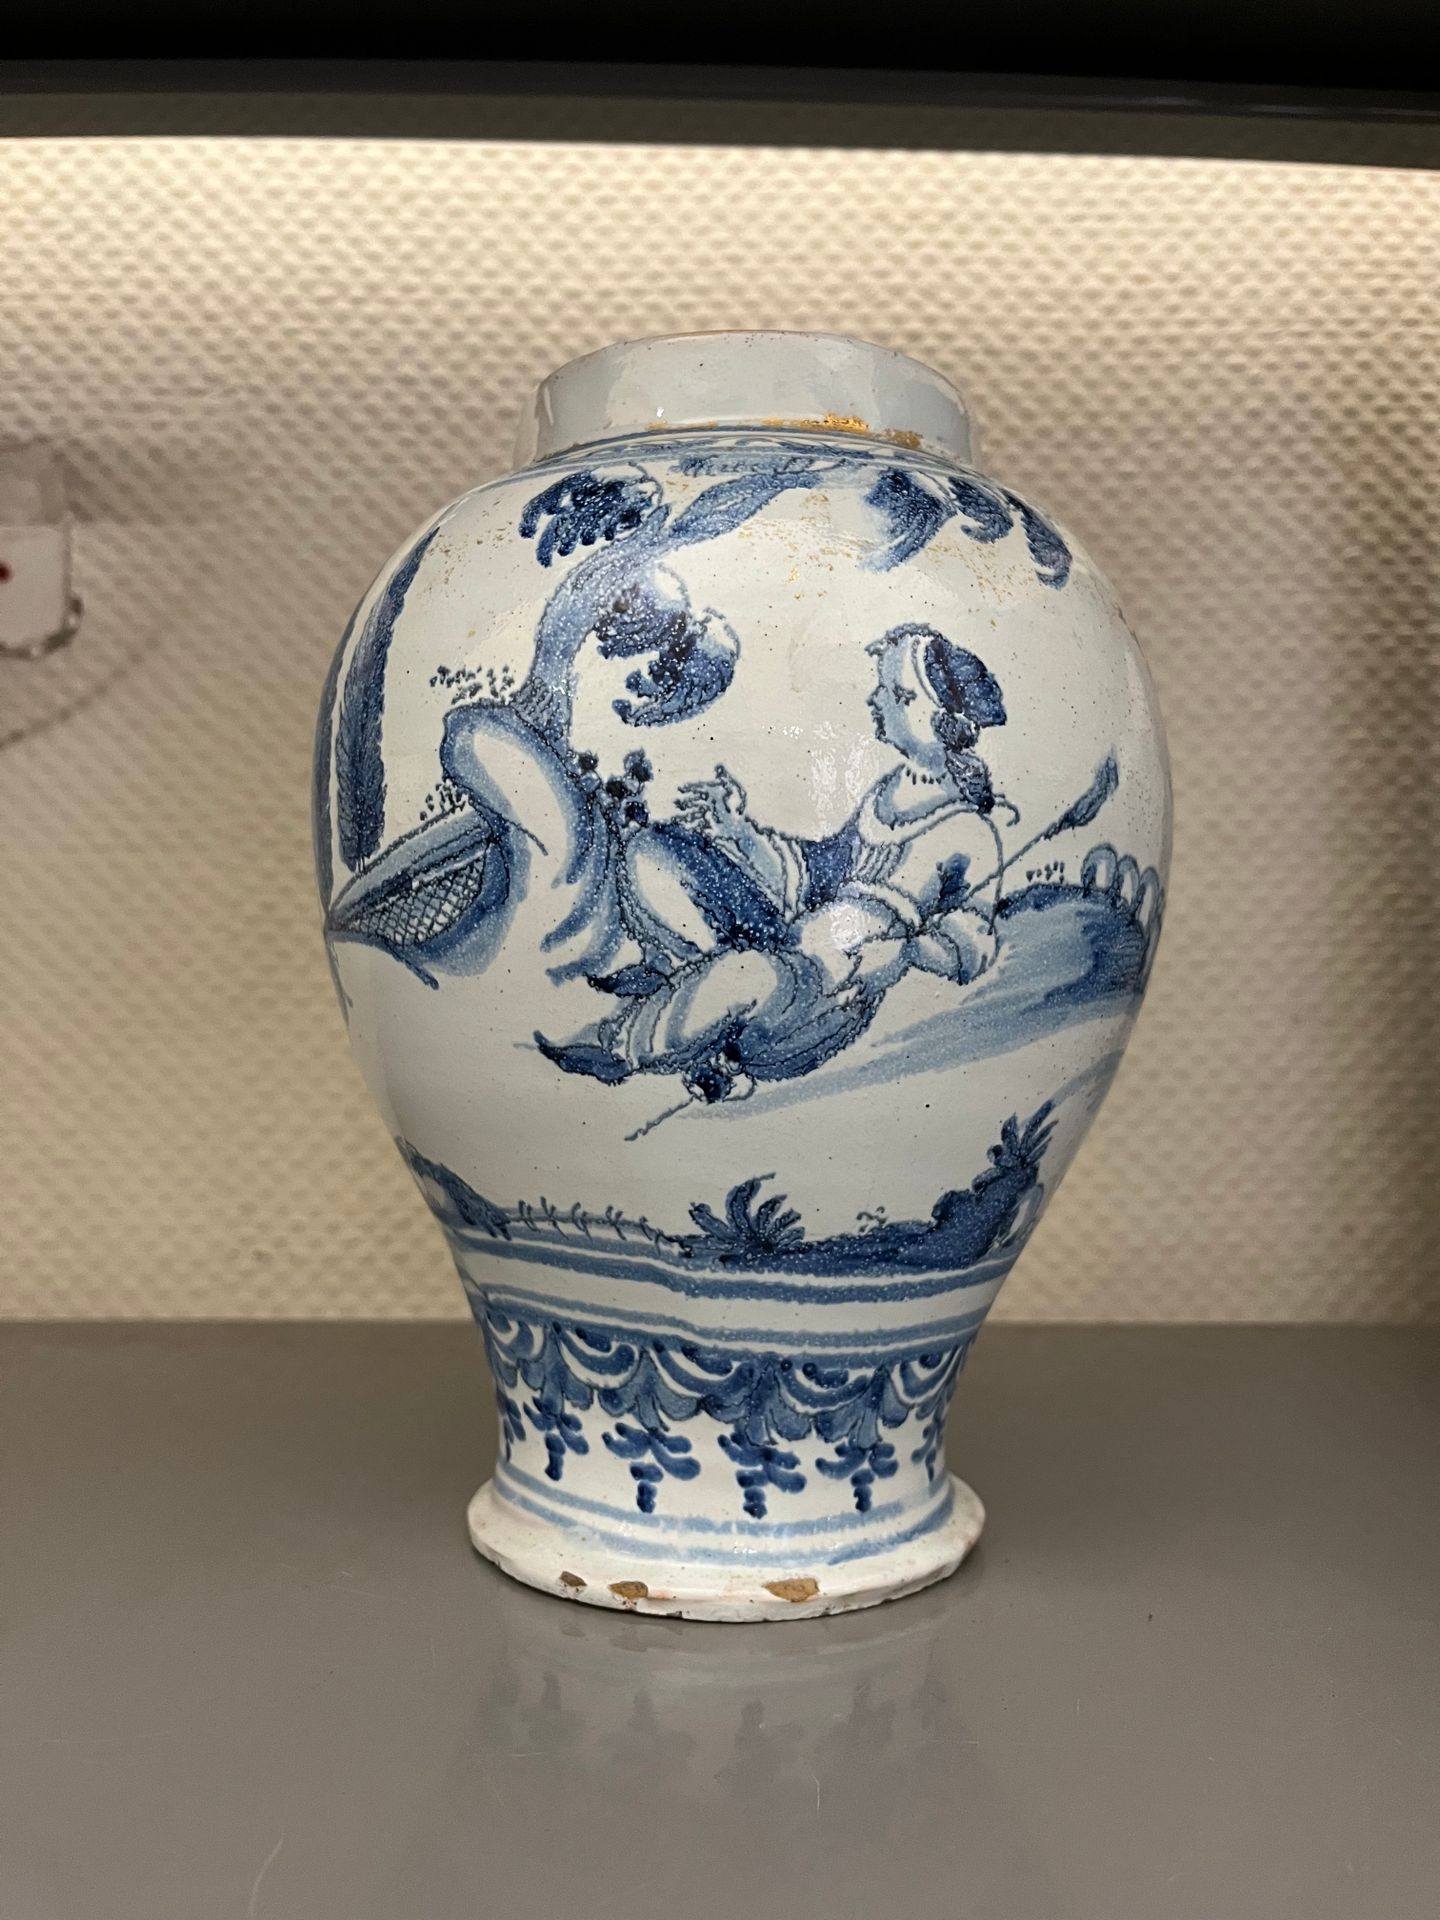 NEVERS 卵形陶器花瓶，蓝白相间的风景背景上有一对夫妇和一只狗的装饰。
18世纪初（碎片）。
高度：22,5厘米